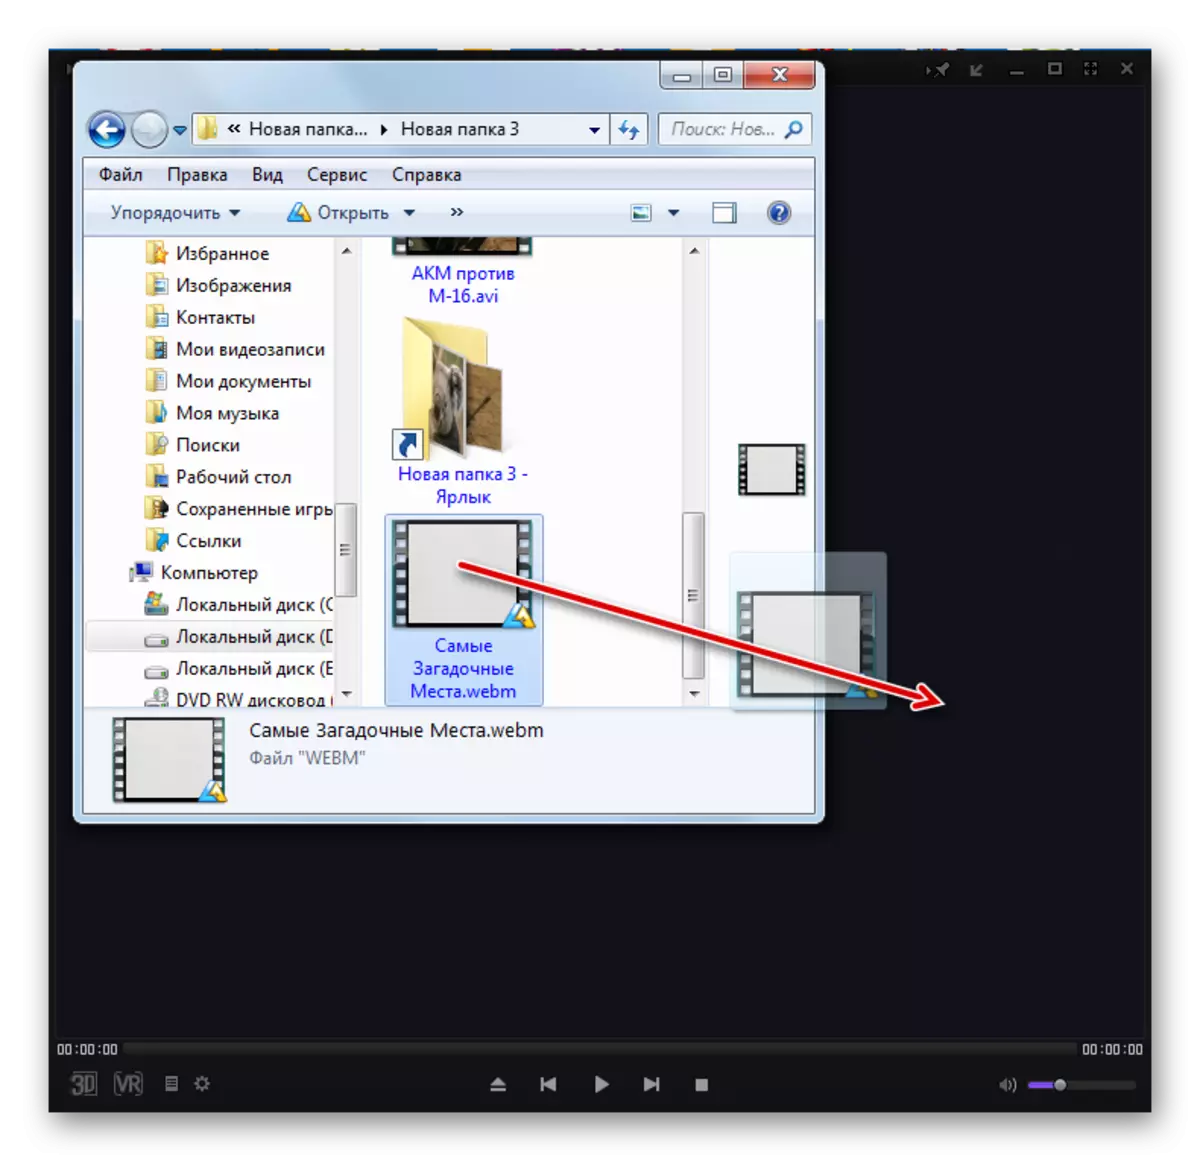 Nambani file webm saka Windows Explorer ing jendela program KMPlayer